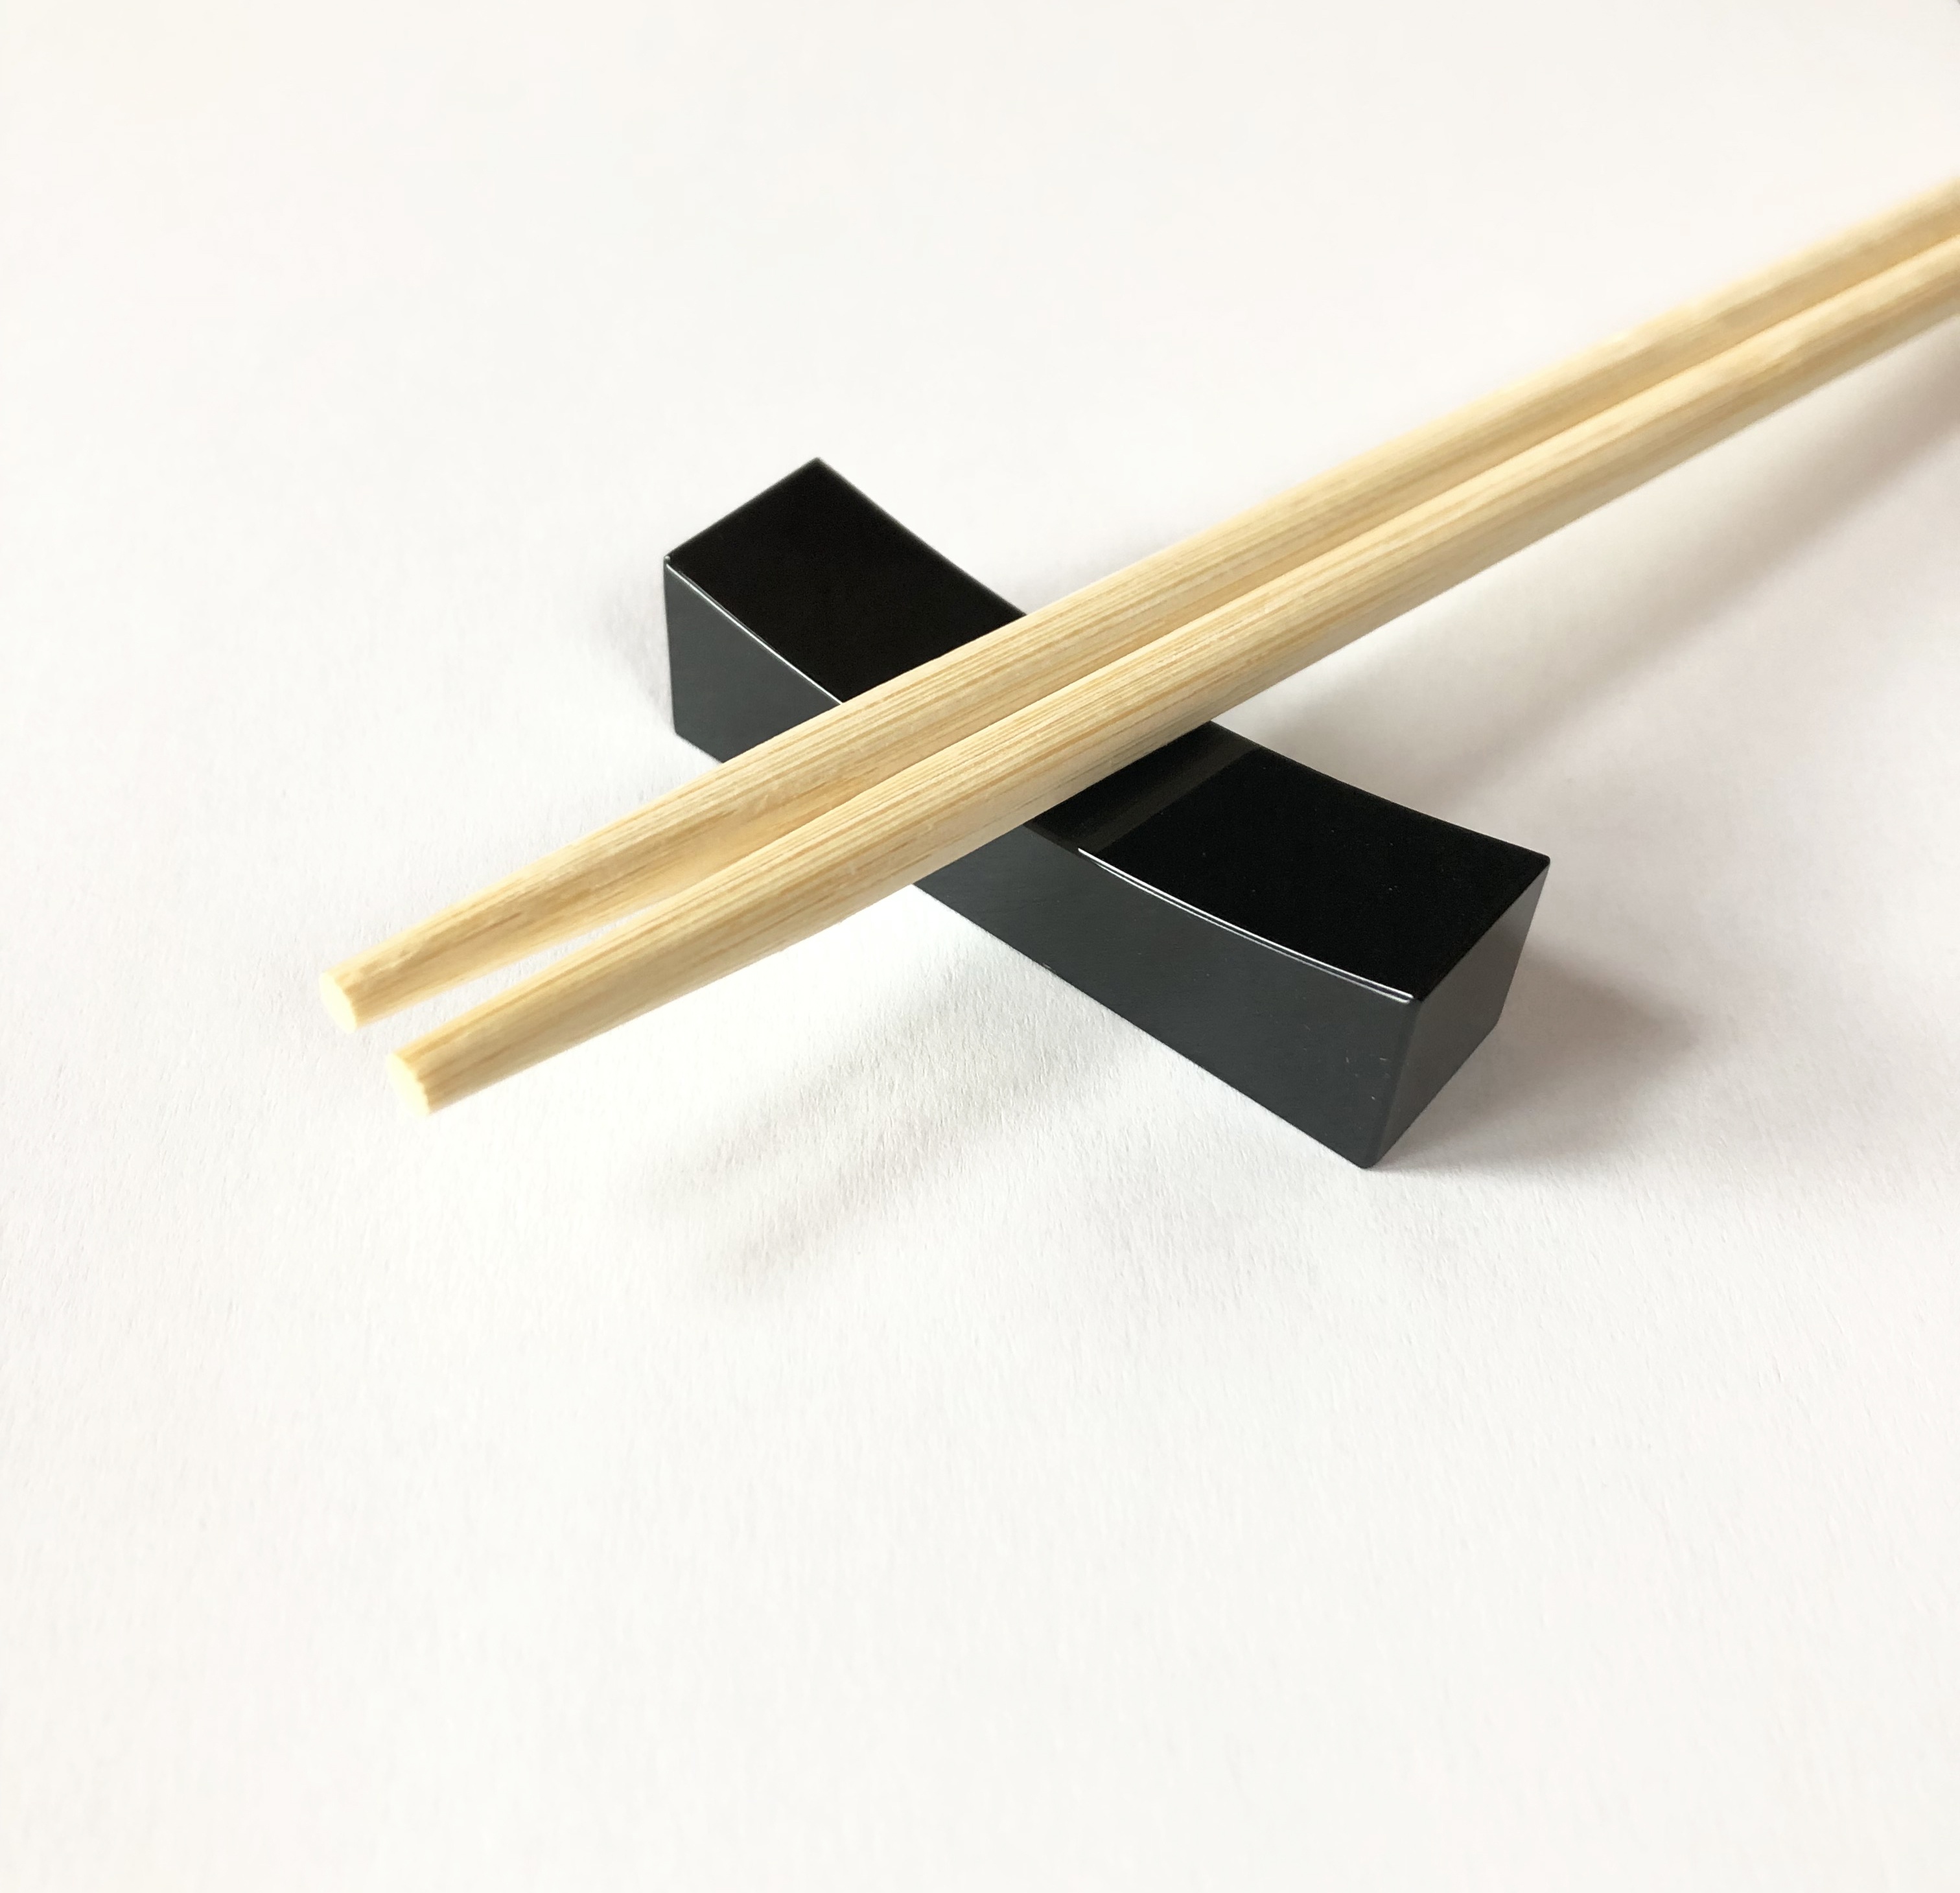 Black jadeite chopsticks rest.